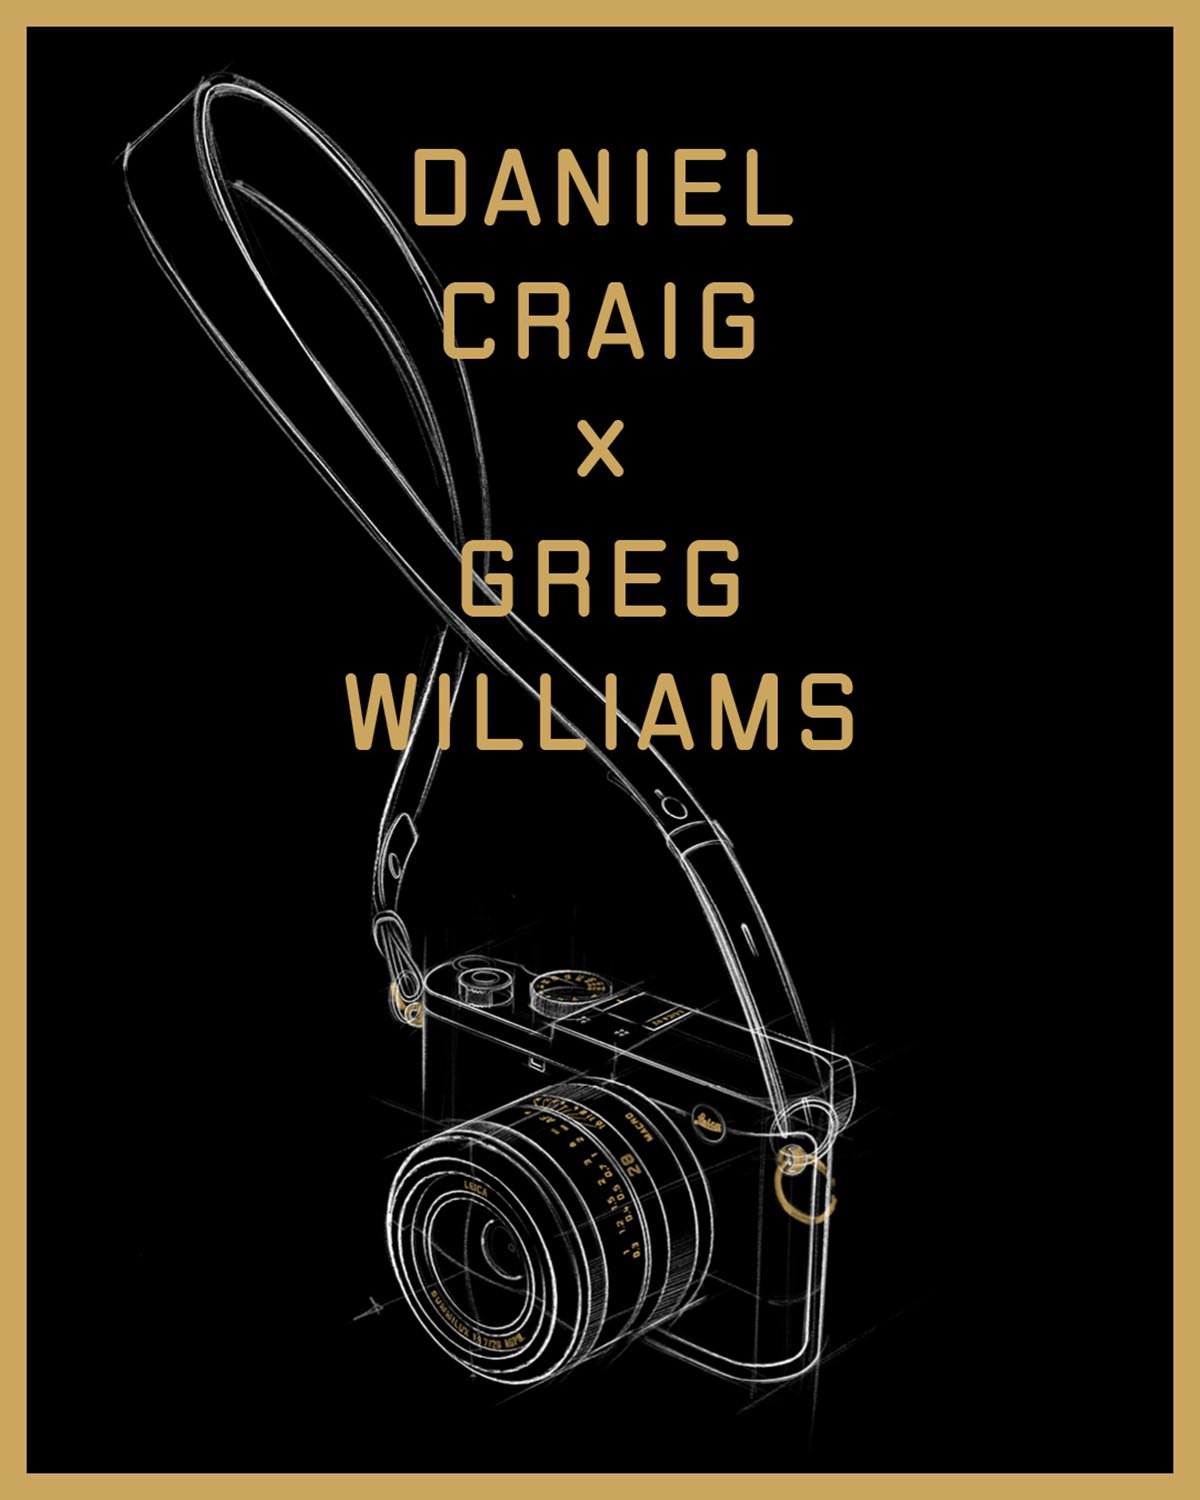 Leica Q2 Daniel Craig x Greg Williams